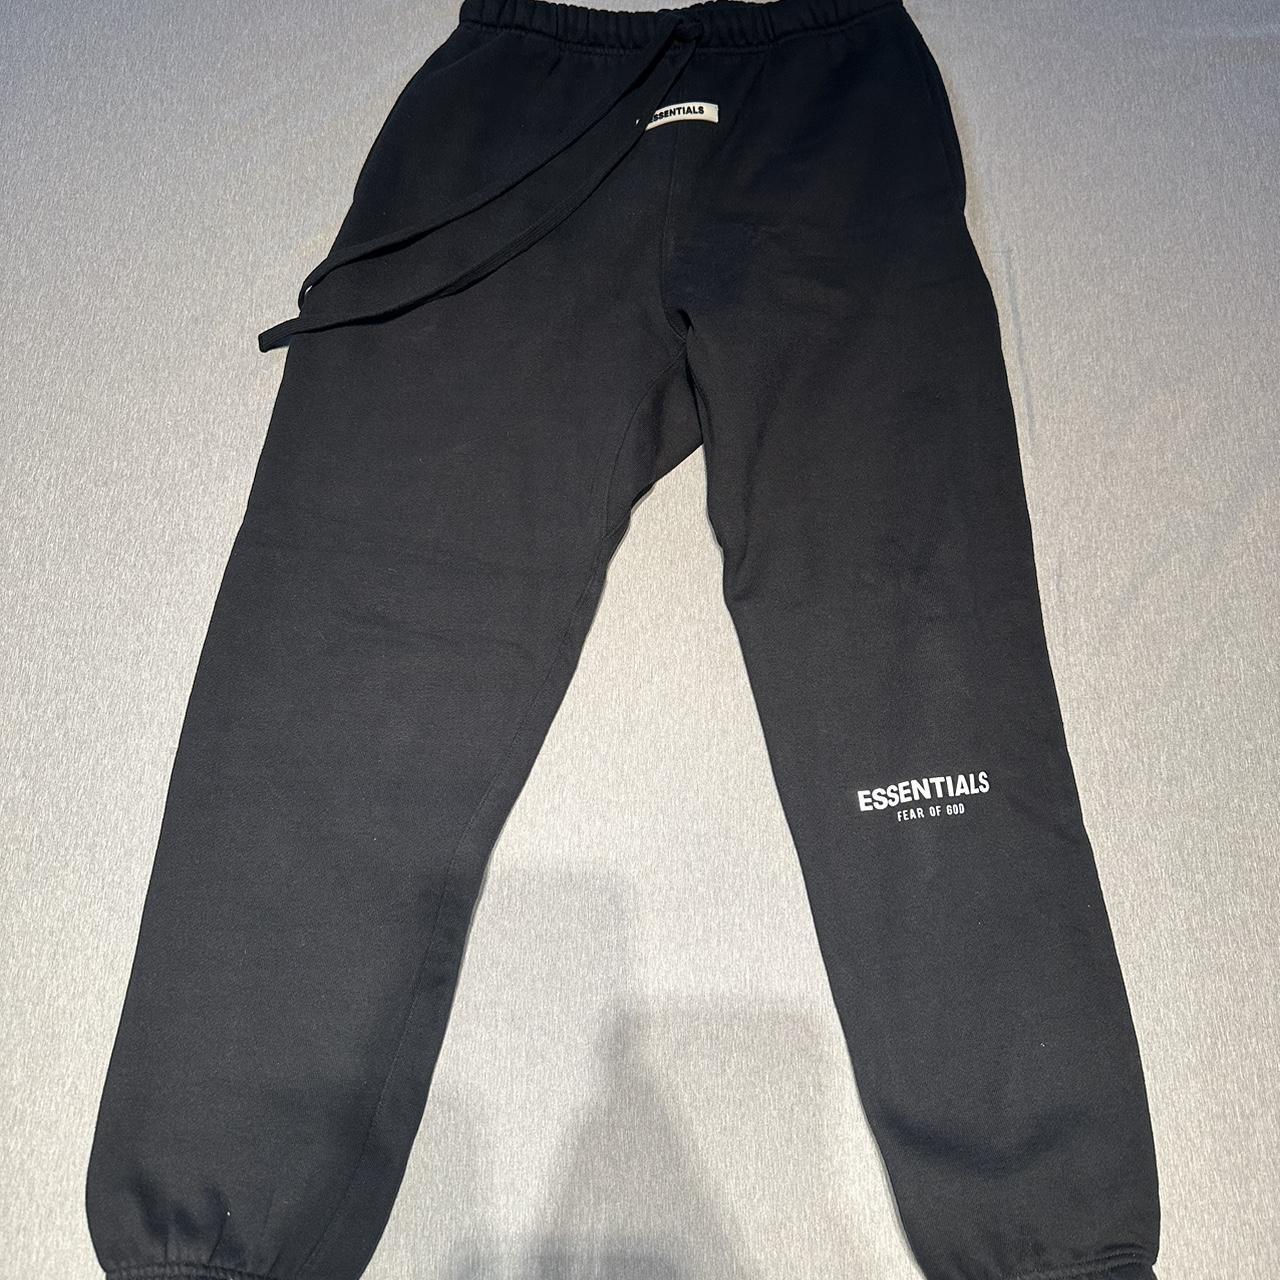 SBetro Black Pants - Super stretchy - Never worn - - Depop